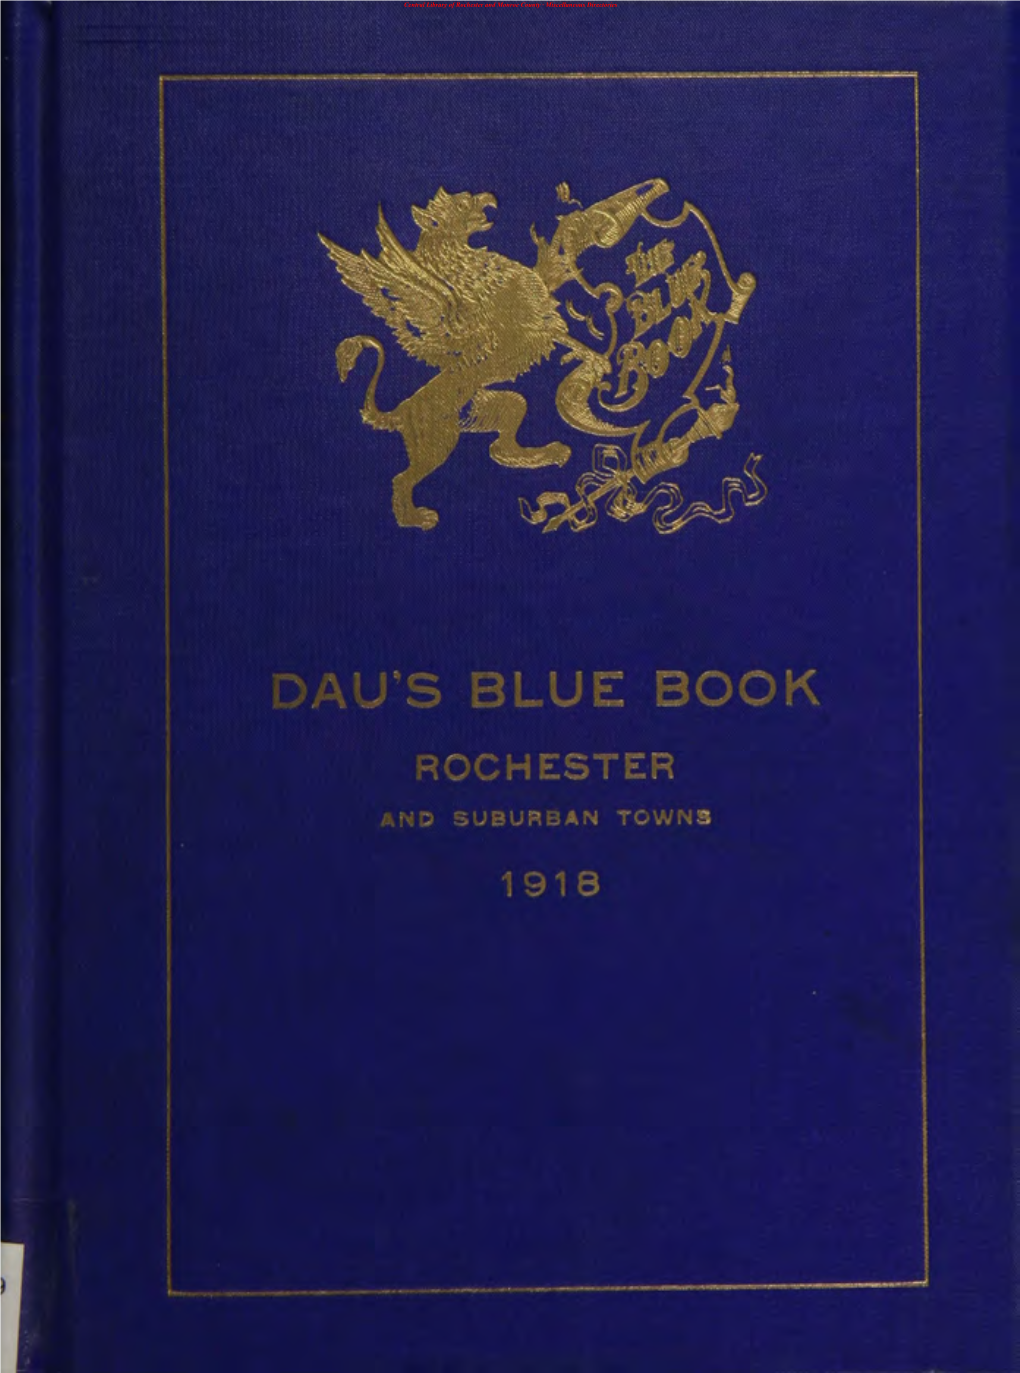 Dau's Blue Book 1918